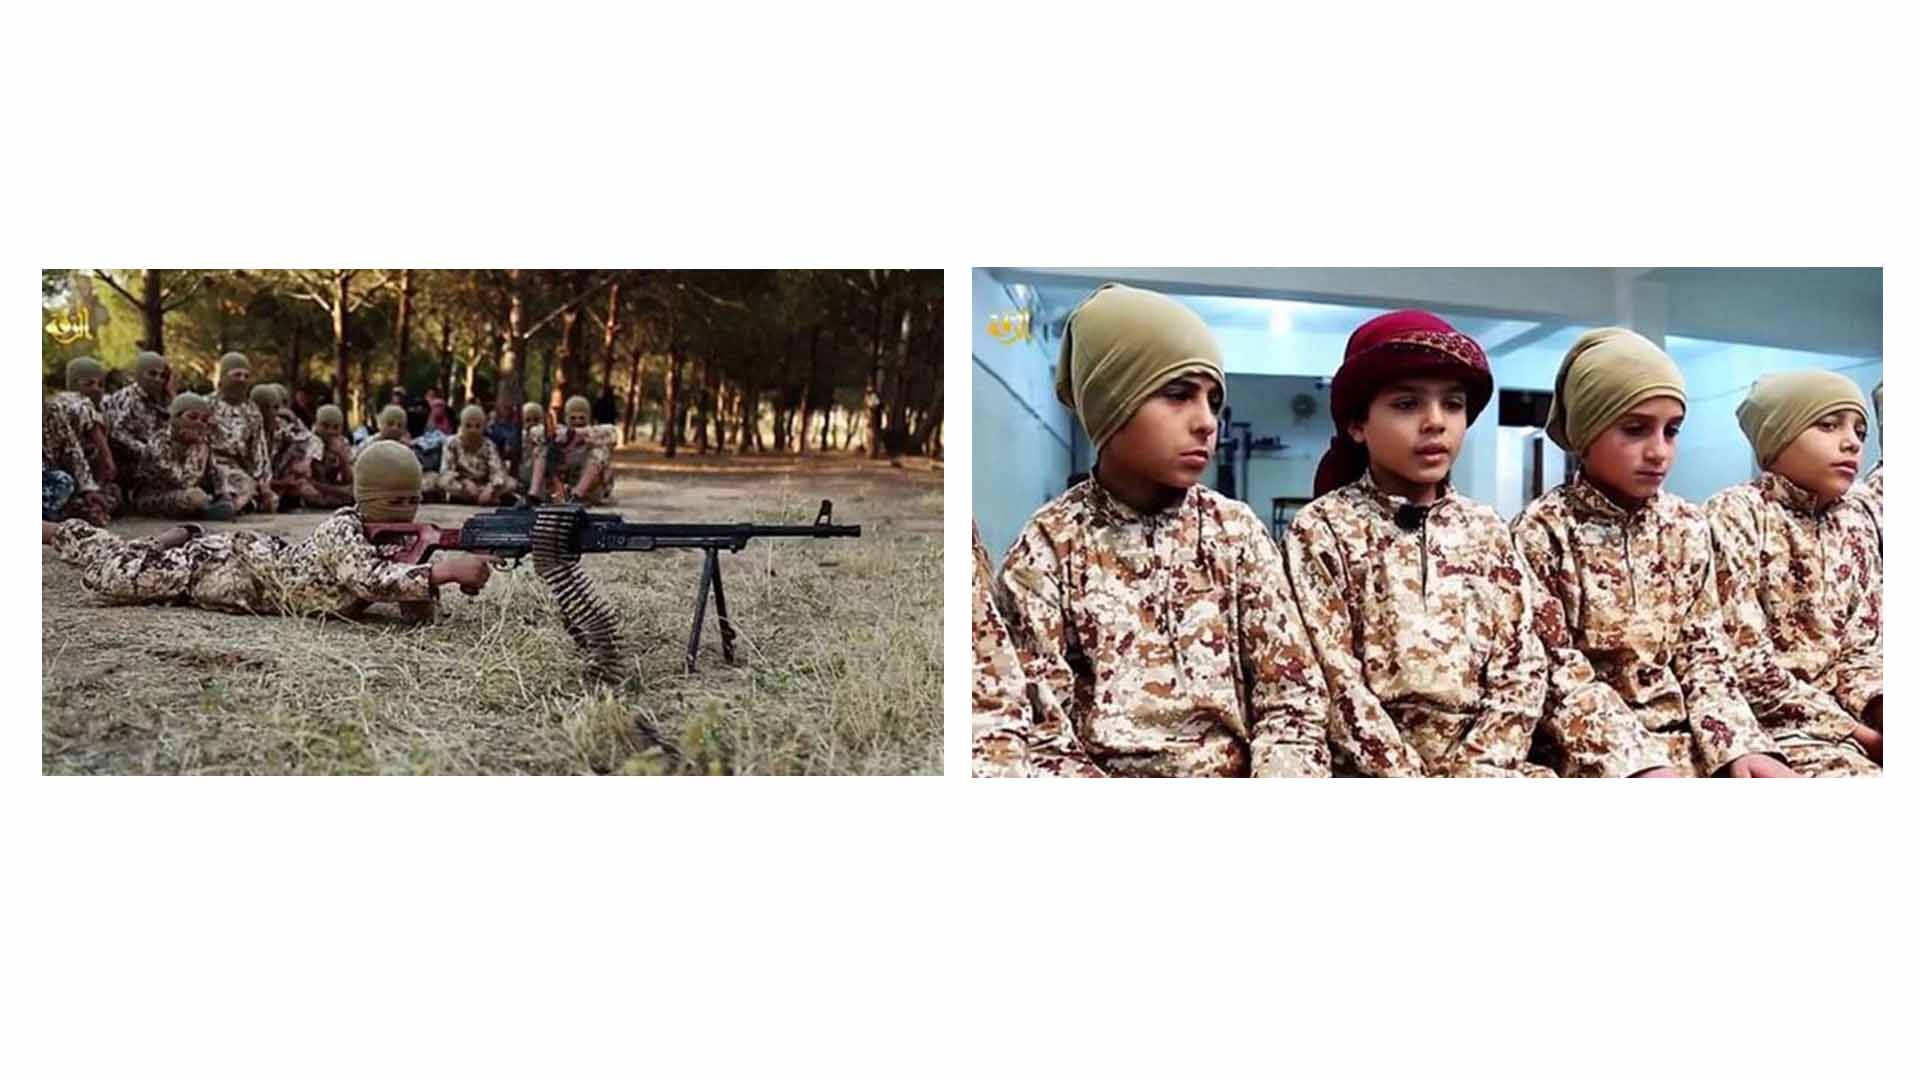 Denominados también como los cachorros del califato, los infantes son obligados a practicar labores terroristas